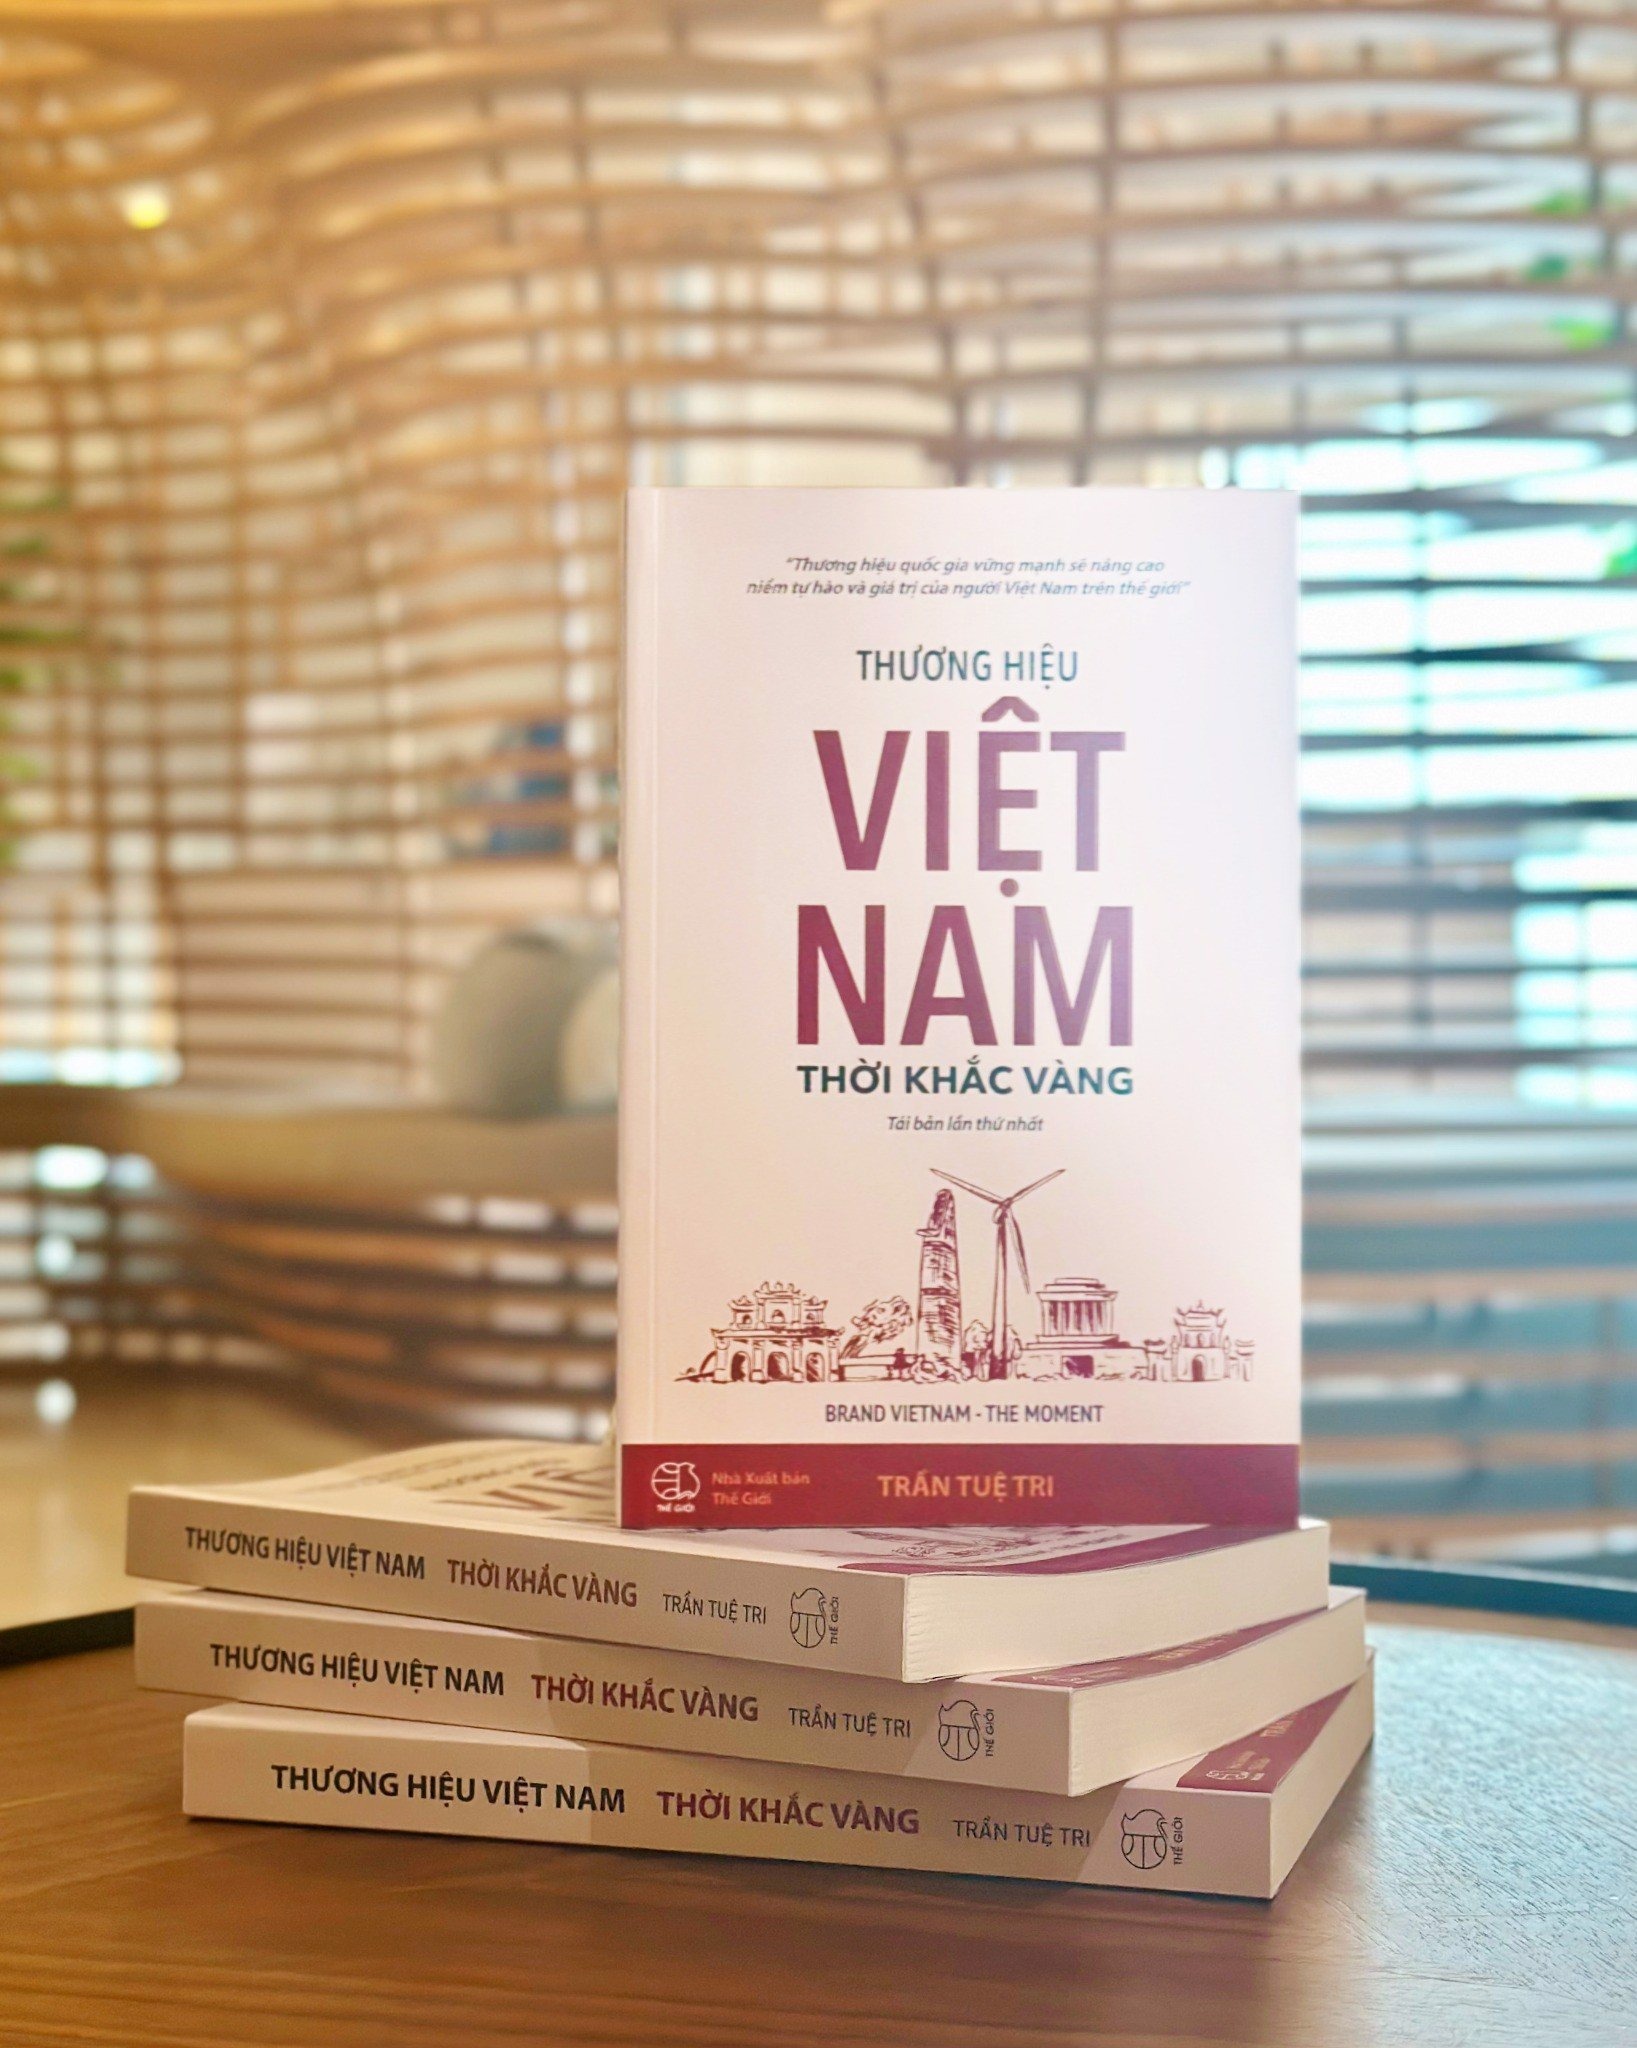 Thương hiệu Việt Nam - Thời khắc vàng (BRAND VIETNAM THE MOMENT)